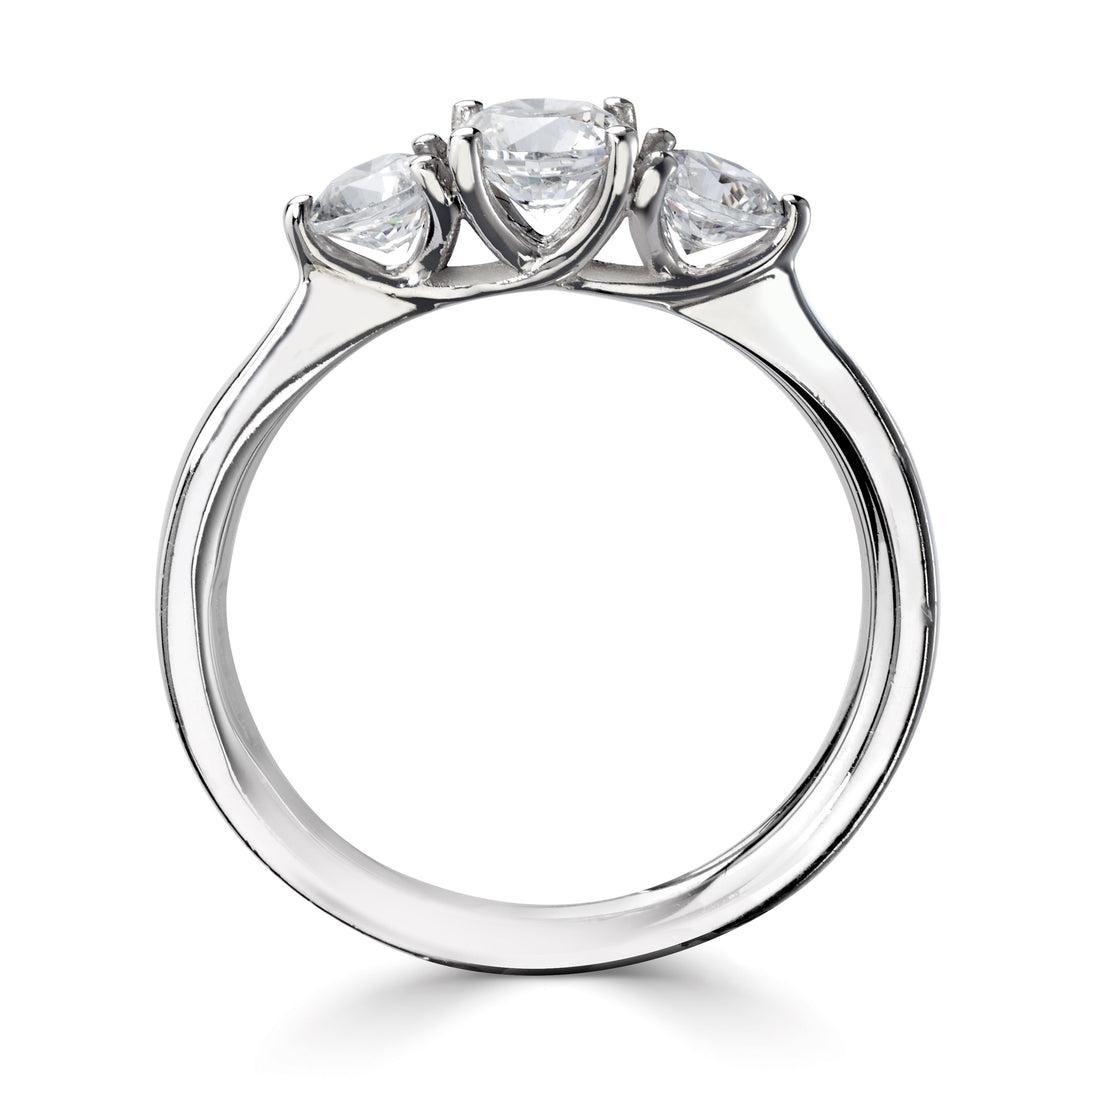 18CT White Gold Three Stone Diamond Ring - Robert Anthony Jewellers, Edinburgh